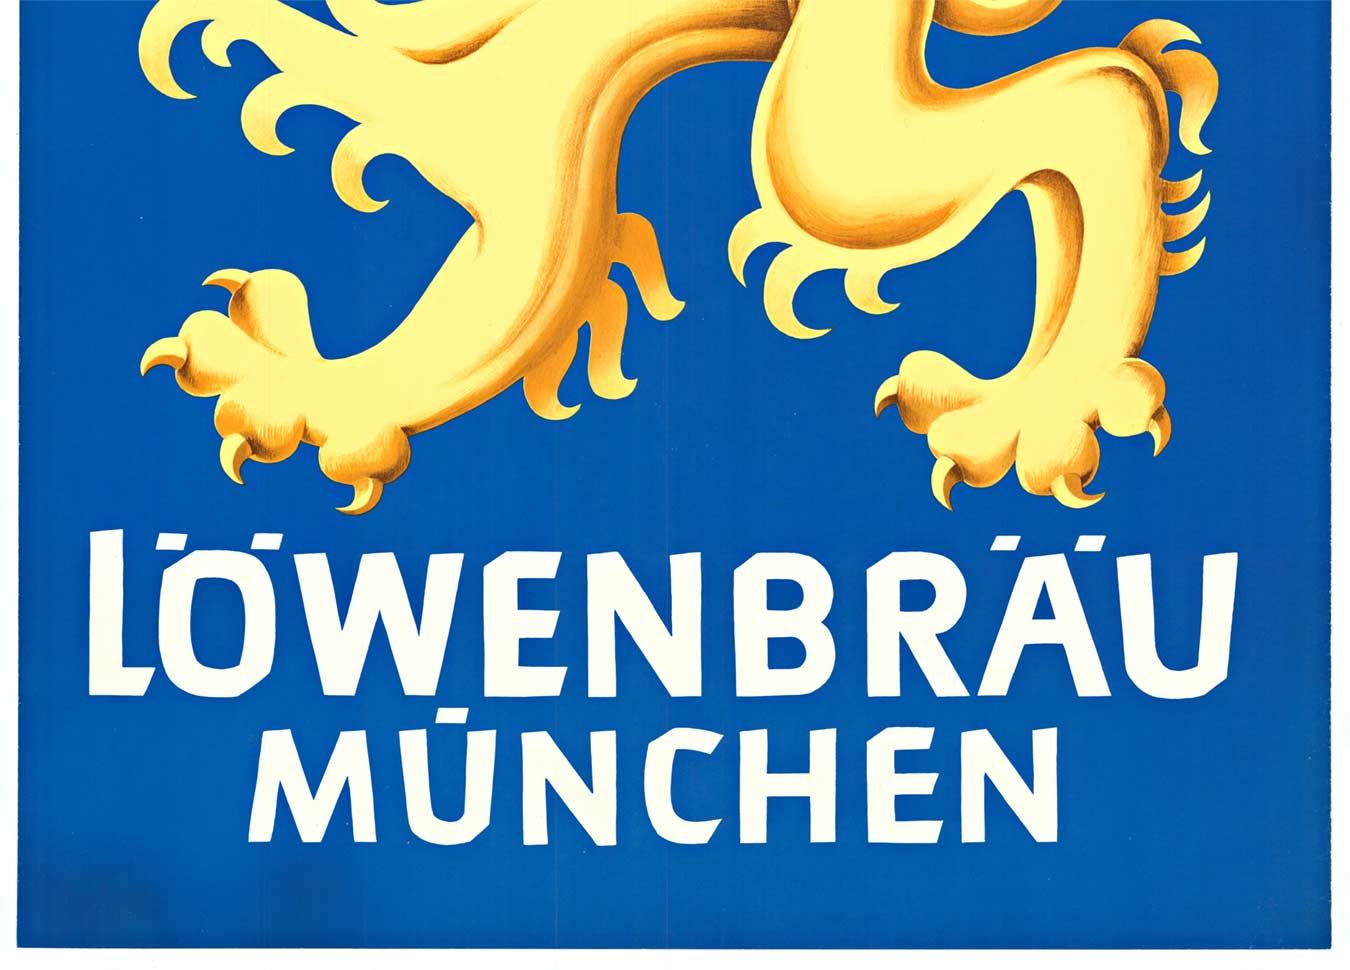 Affiche vintage originale de Lowenbrau Munchen avec lion (Löwenbräu München) - Gothique Print par Unknown